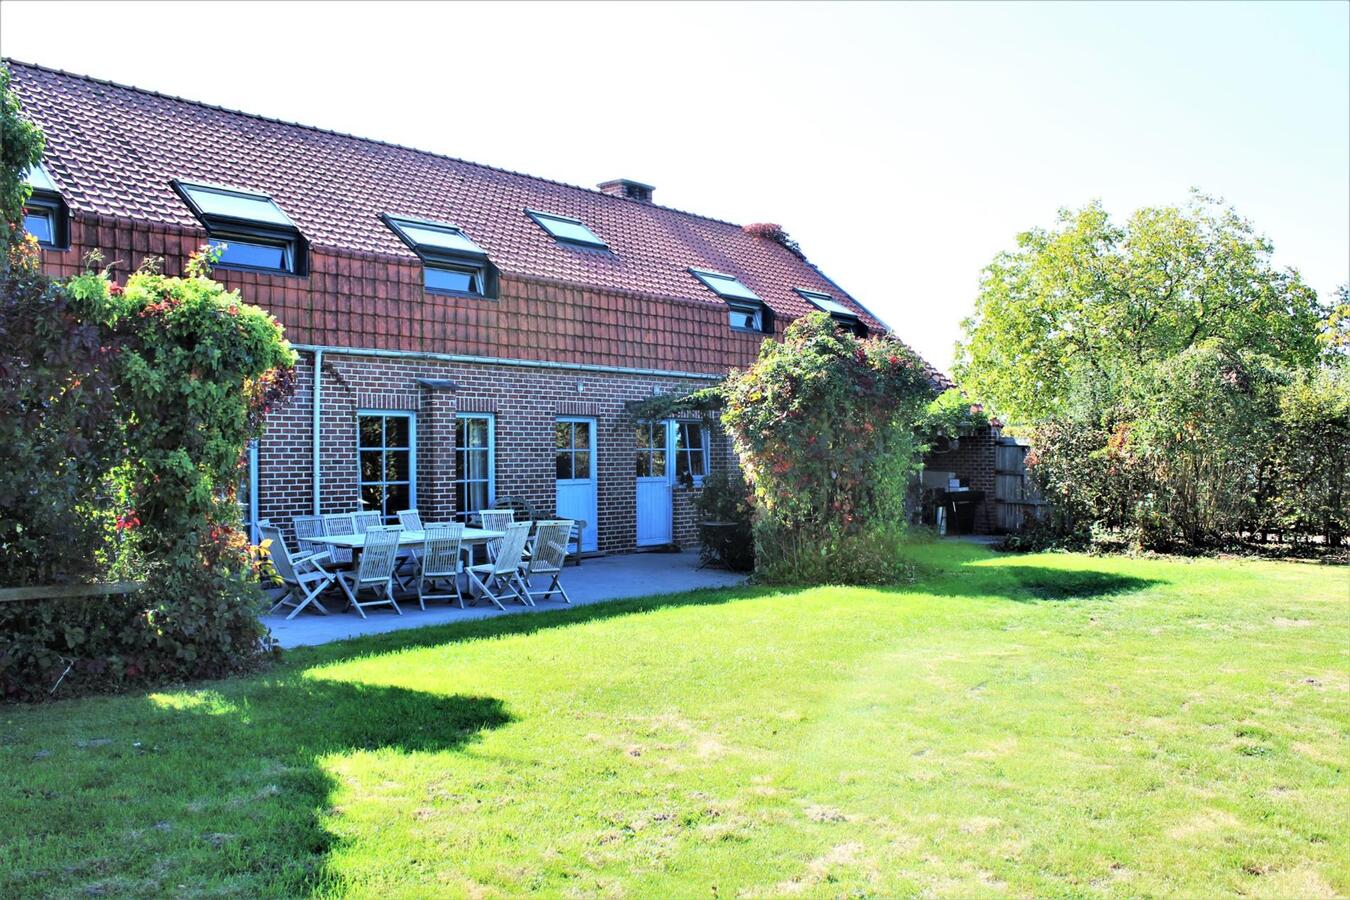 Property sold in Wolvertem